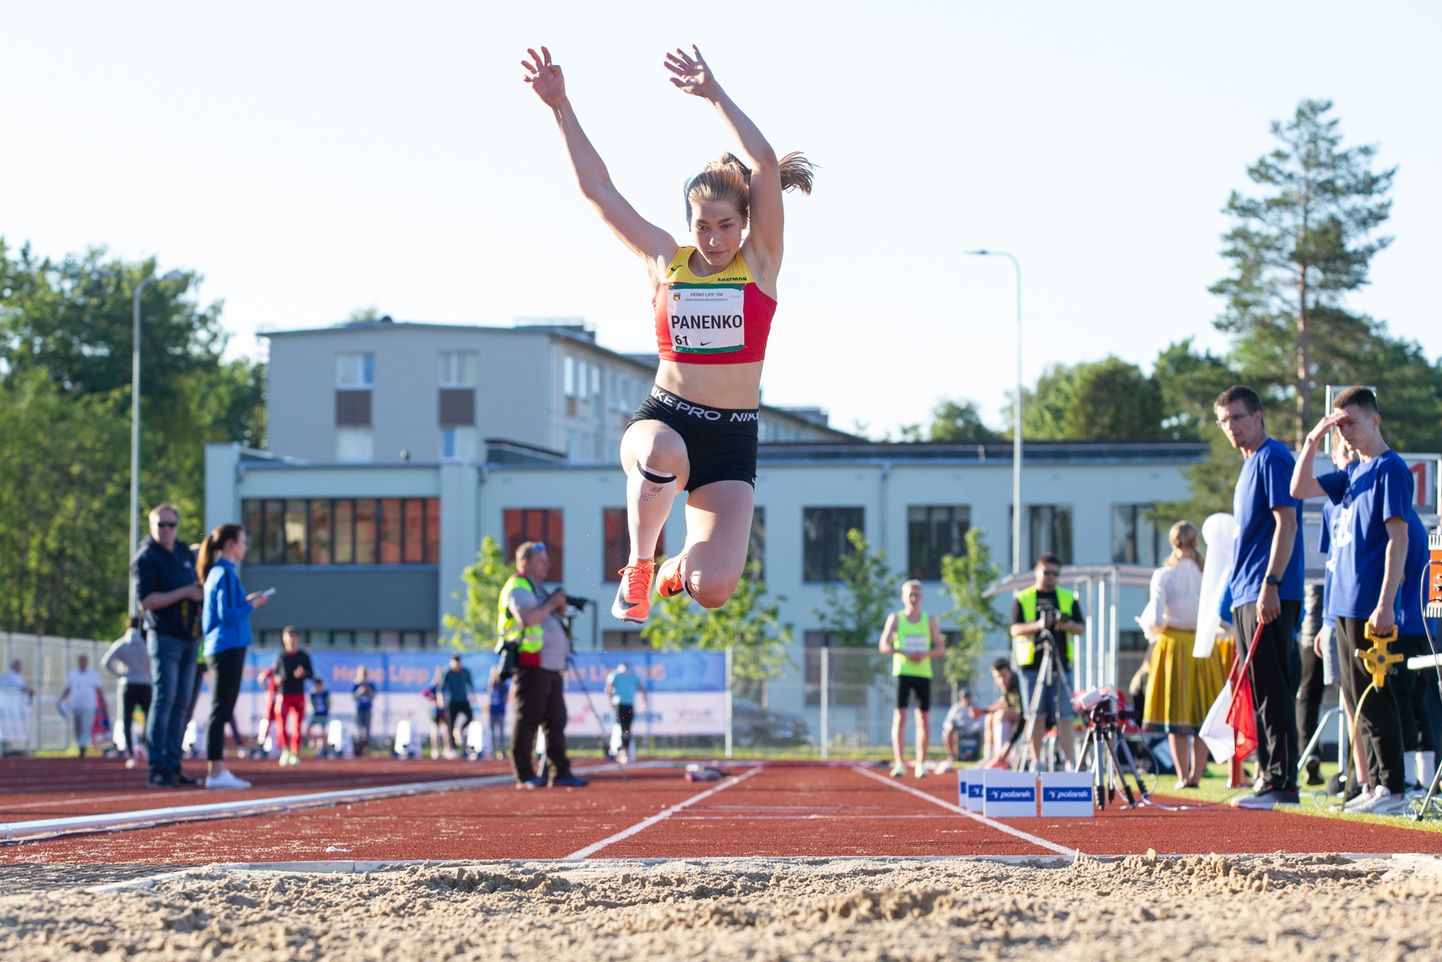 Анна Паненко приняла участие в легкоатлетическом вечере в Йыхви 21 июня, где с результатом 12,22 метра победила в тройном прыжке.